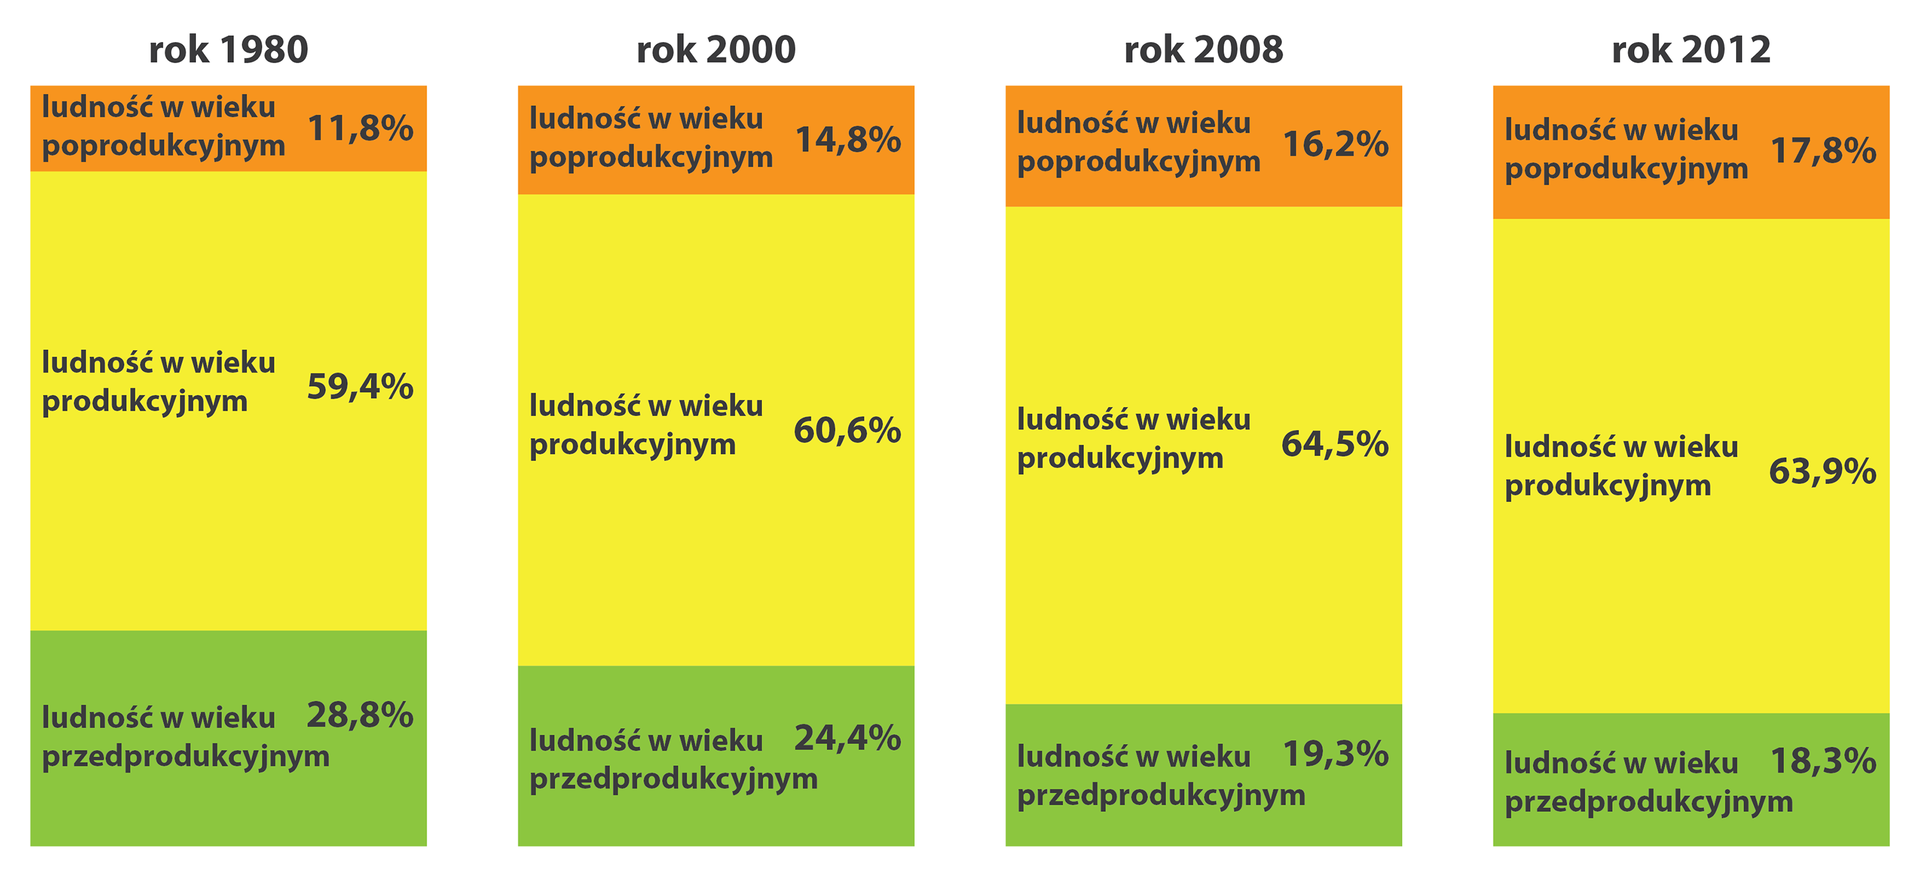 Na ilustracji cztery wykresy słupkowe strukturalne: struktura wieku Polaków w latach 1980, 2000, 2008, 2012. 1980200020082012Ludność w wiekupoprodukcyjnym11,8%14,8%16,2%17,8%Ludność w wiekuprodukcyjnym59,4%60,6%64,5%63,9%Ludność w wiekuprzedprodukcyjnym28,8%24,4%19,3%18,3%